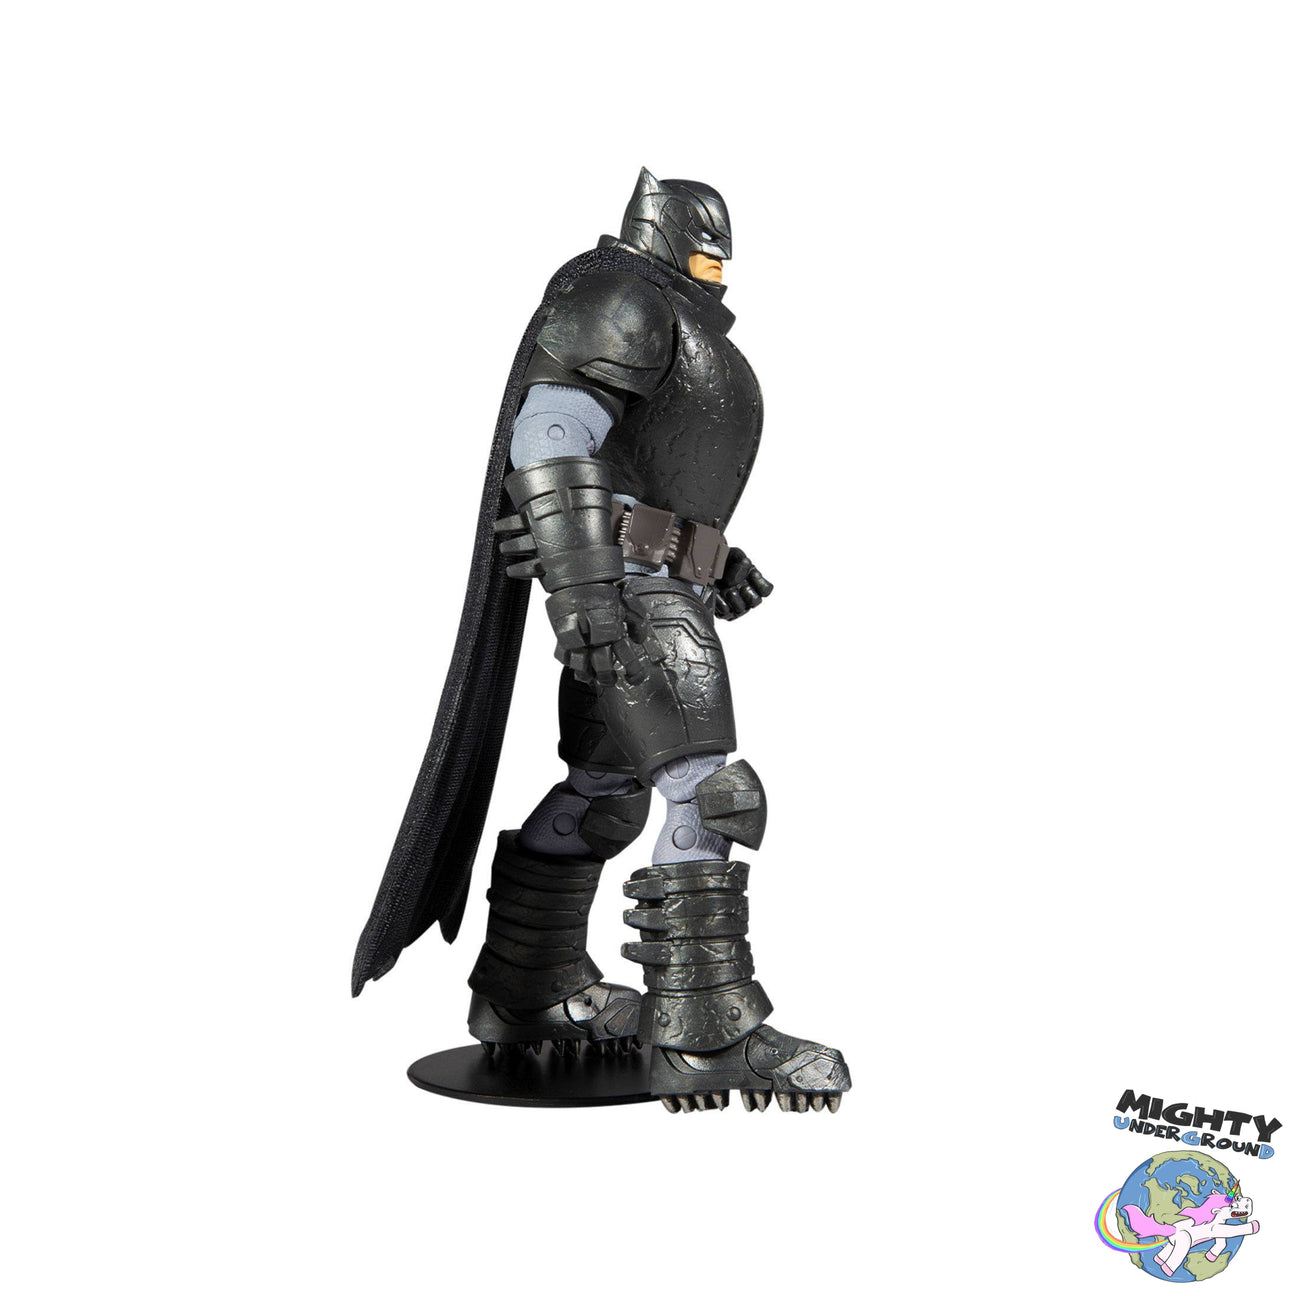 DC Multiverse: Armored Batman (The Dark Knight Returns)-Actionfiguren-McFarlane Toys-Mighty Underground